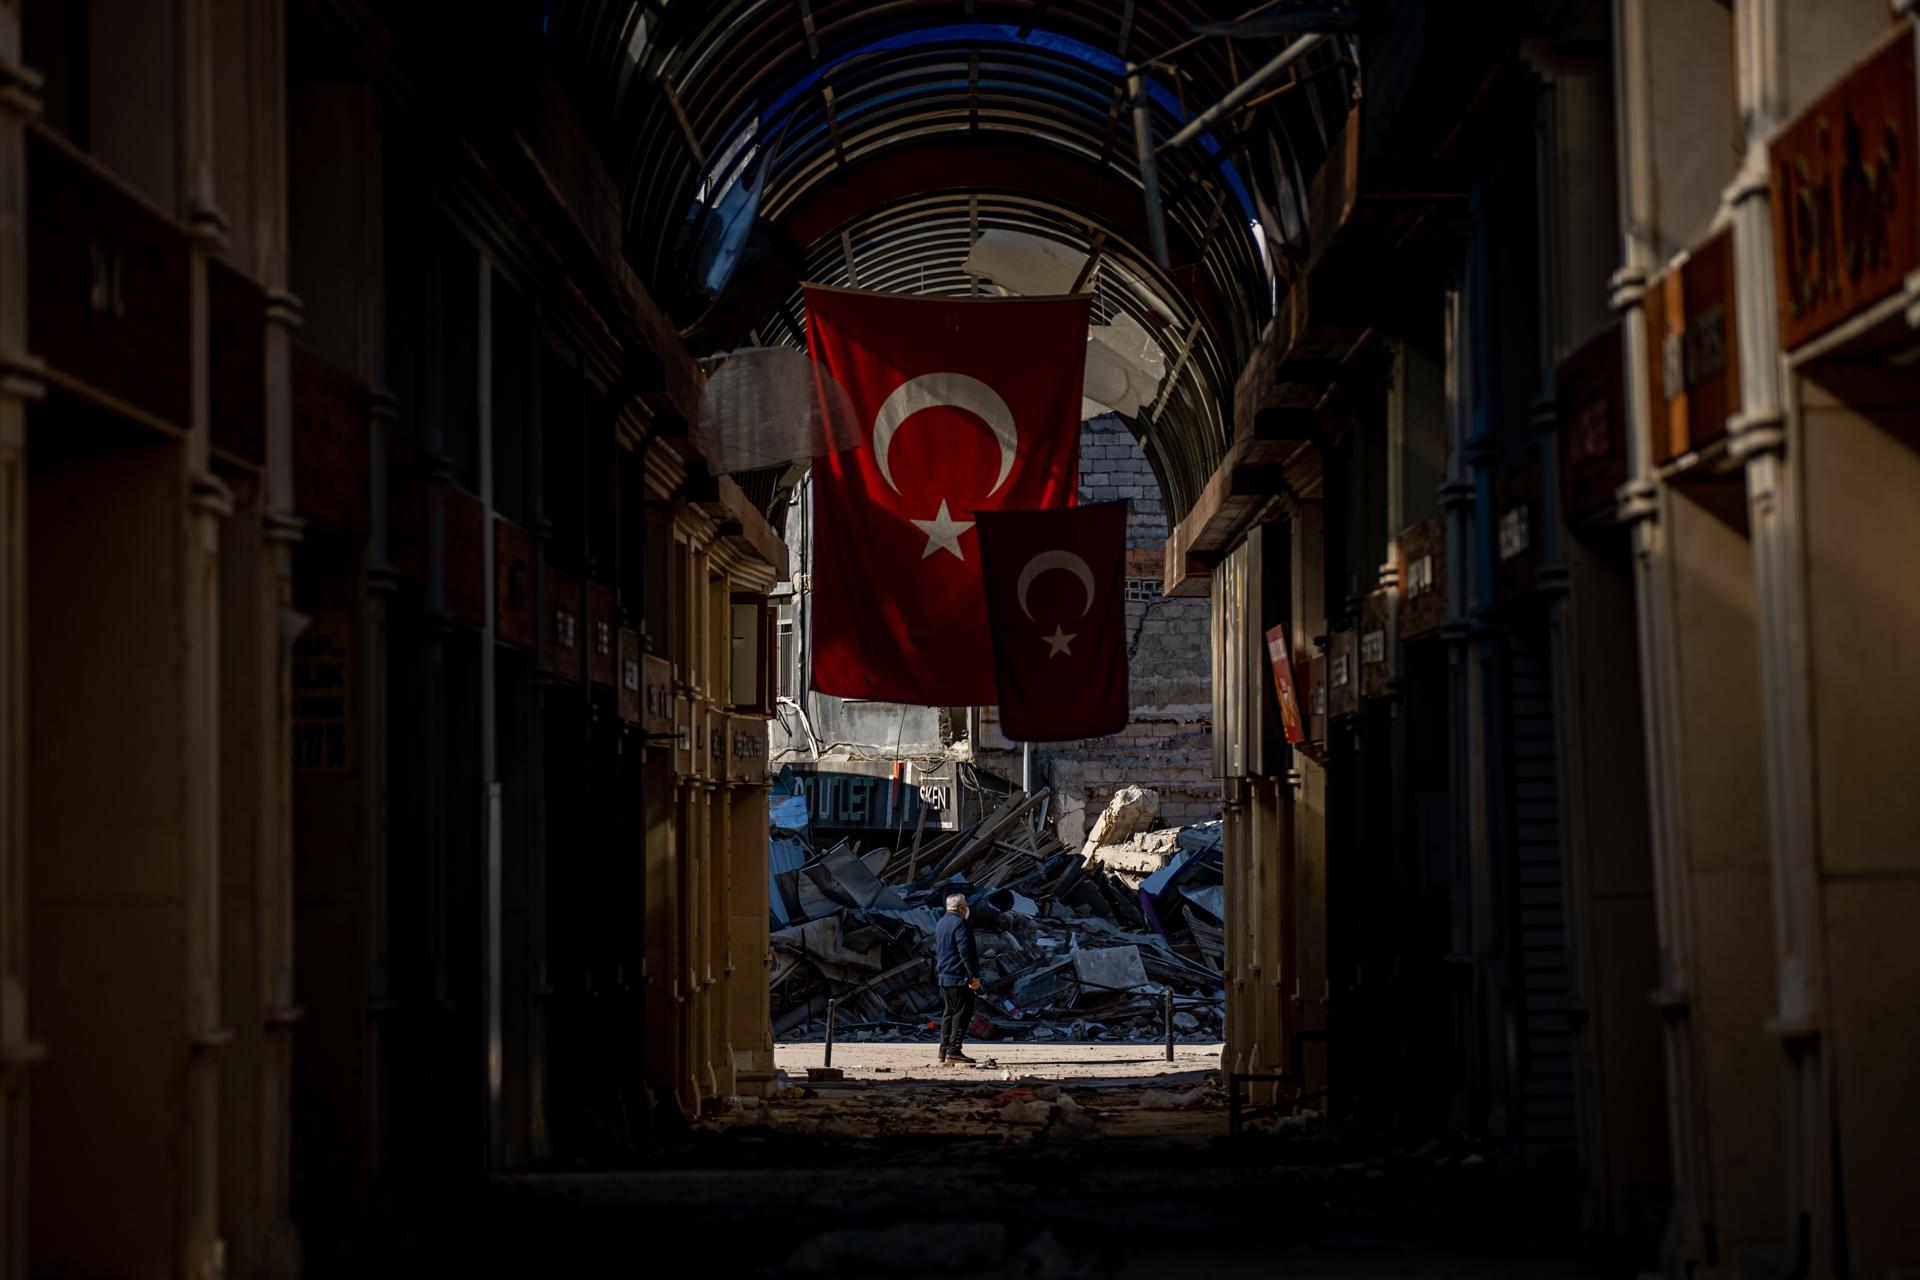 Un hombre se encuentra en medio de una calle junto a un edificio derrumbado tras un fuerte terremoto, en la ciudad de Hatay, Turquía, el 14 de febrero de 2023. EFE/MARTIN DIVISEK